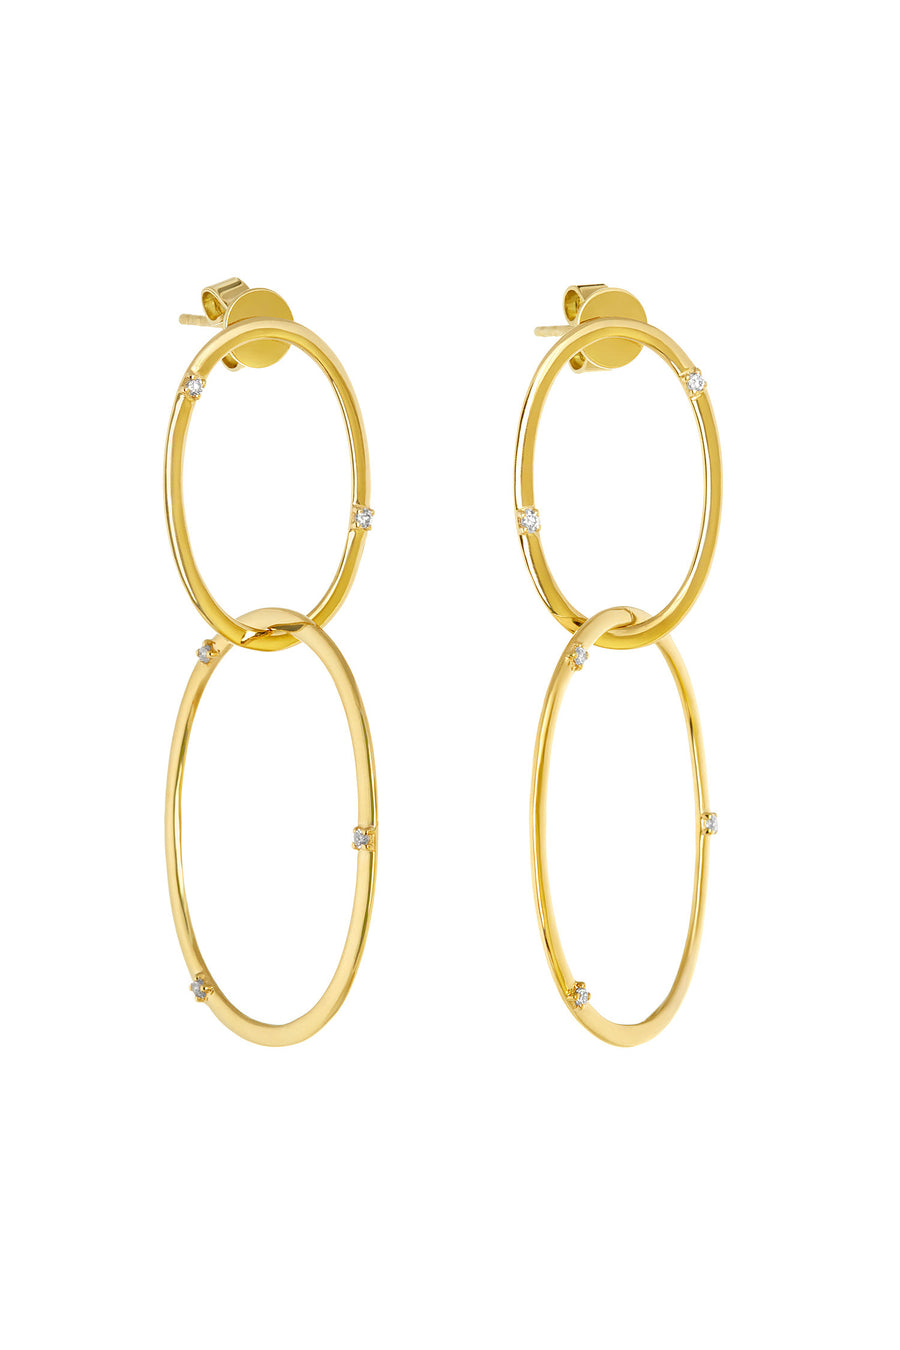 Diamond 'Oh!' Earrings in 18k Gold